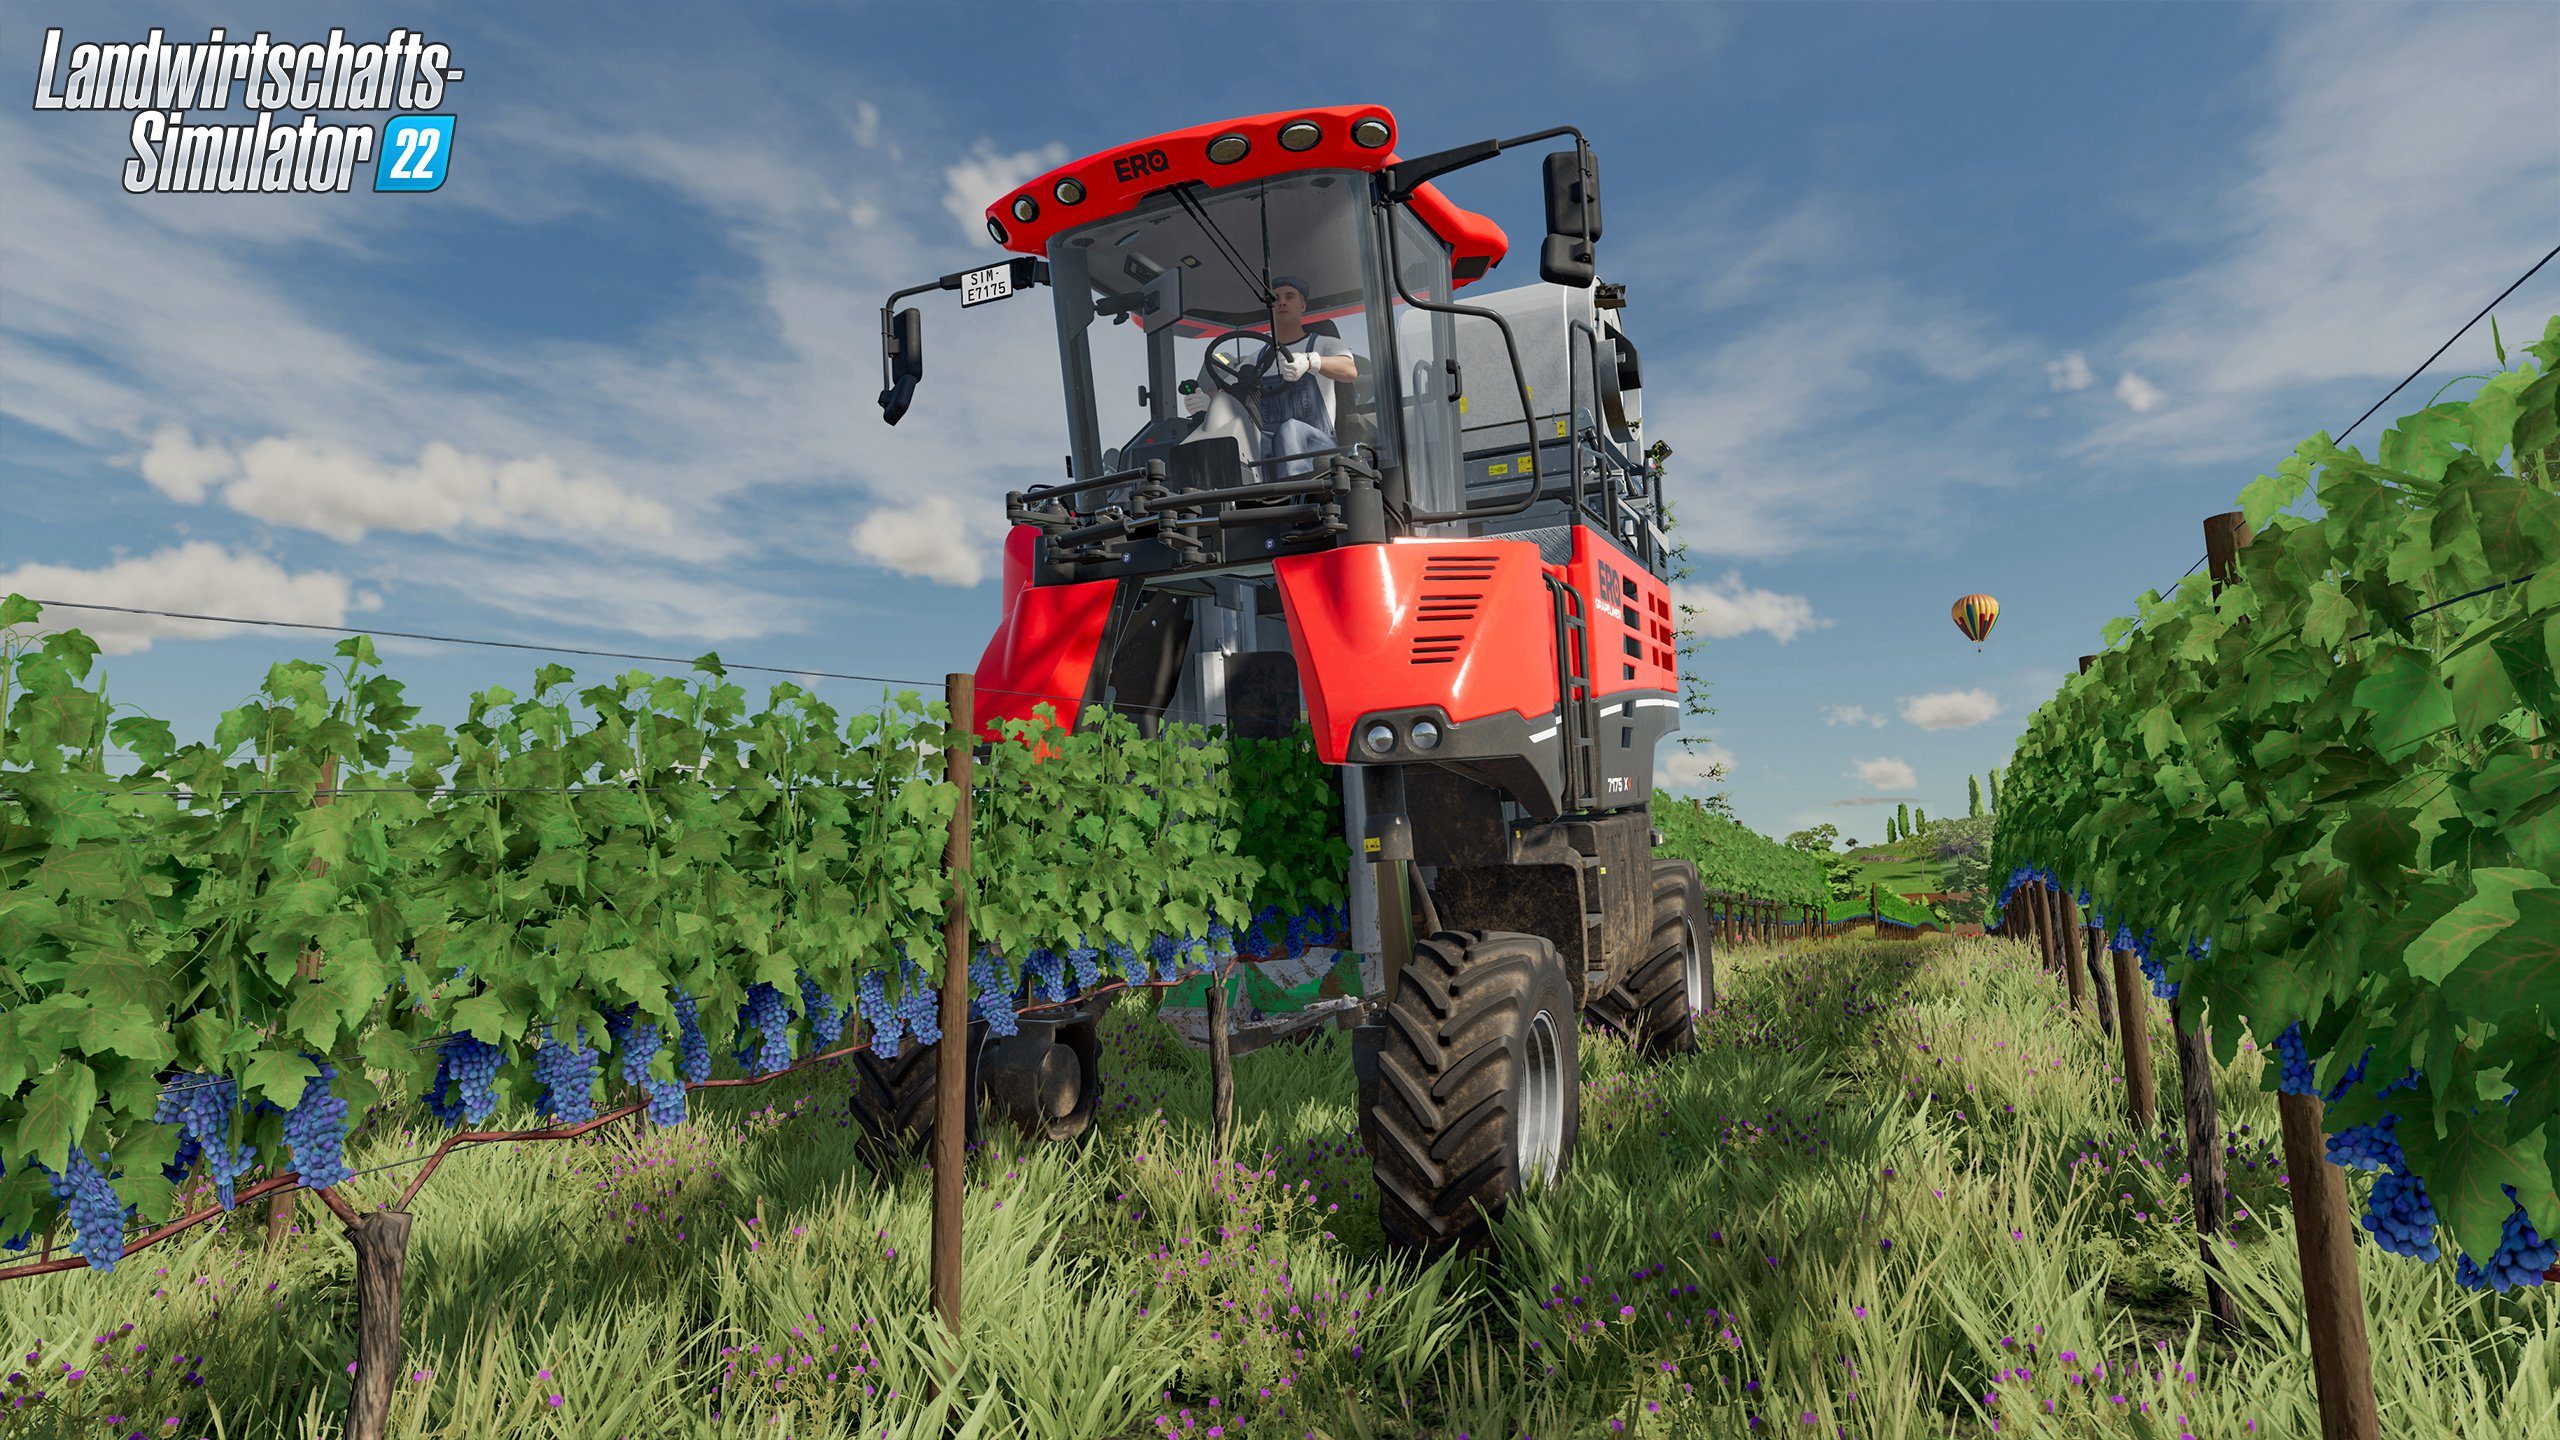 Landwirtschafts-Simulator 22 PC Rundumleuchte